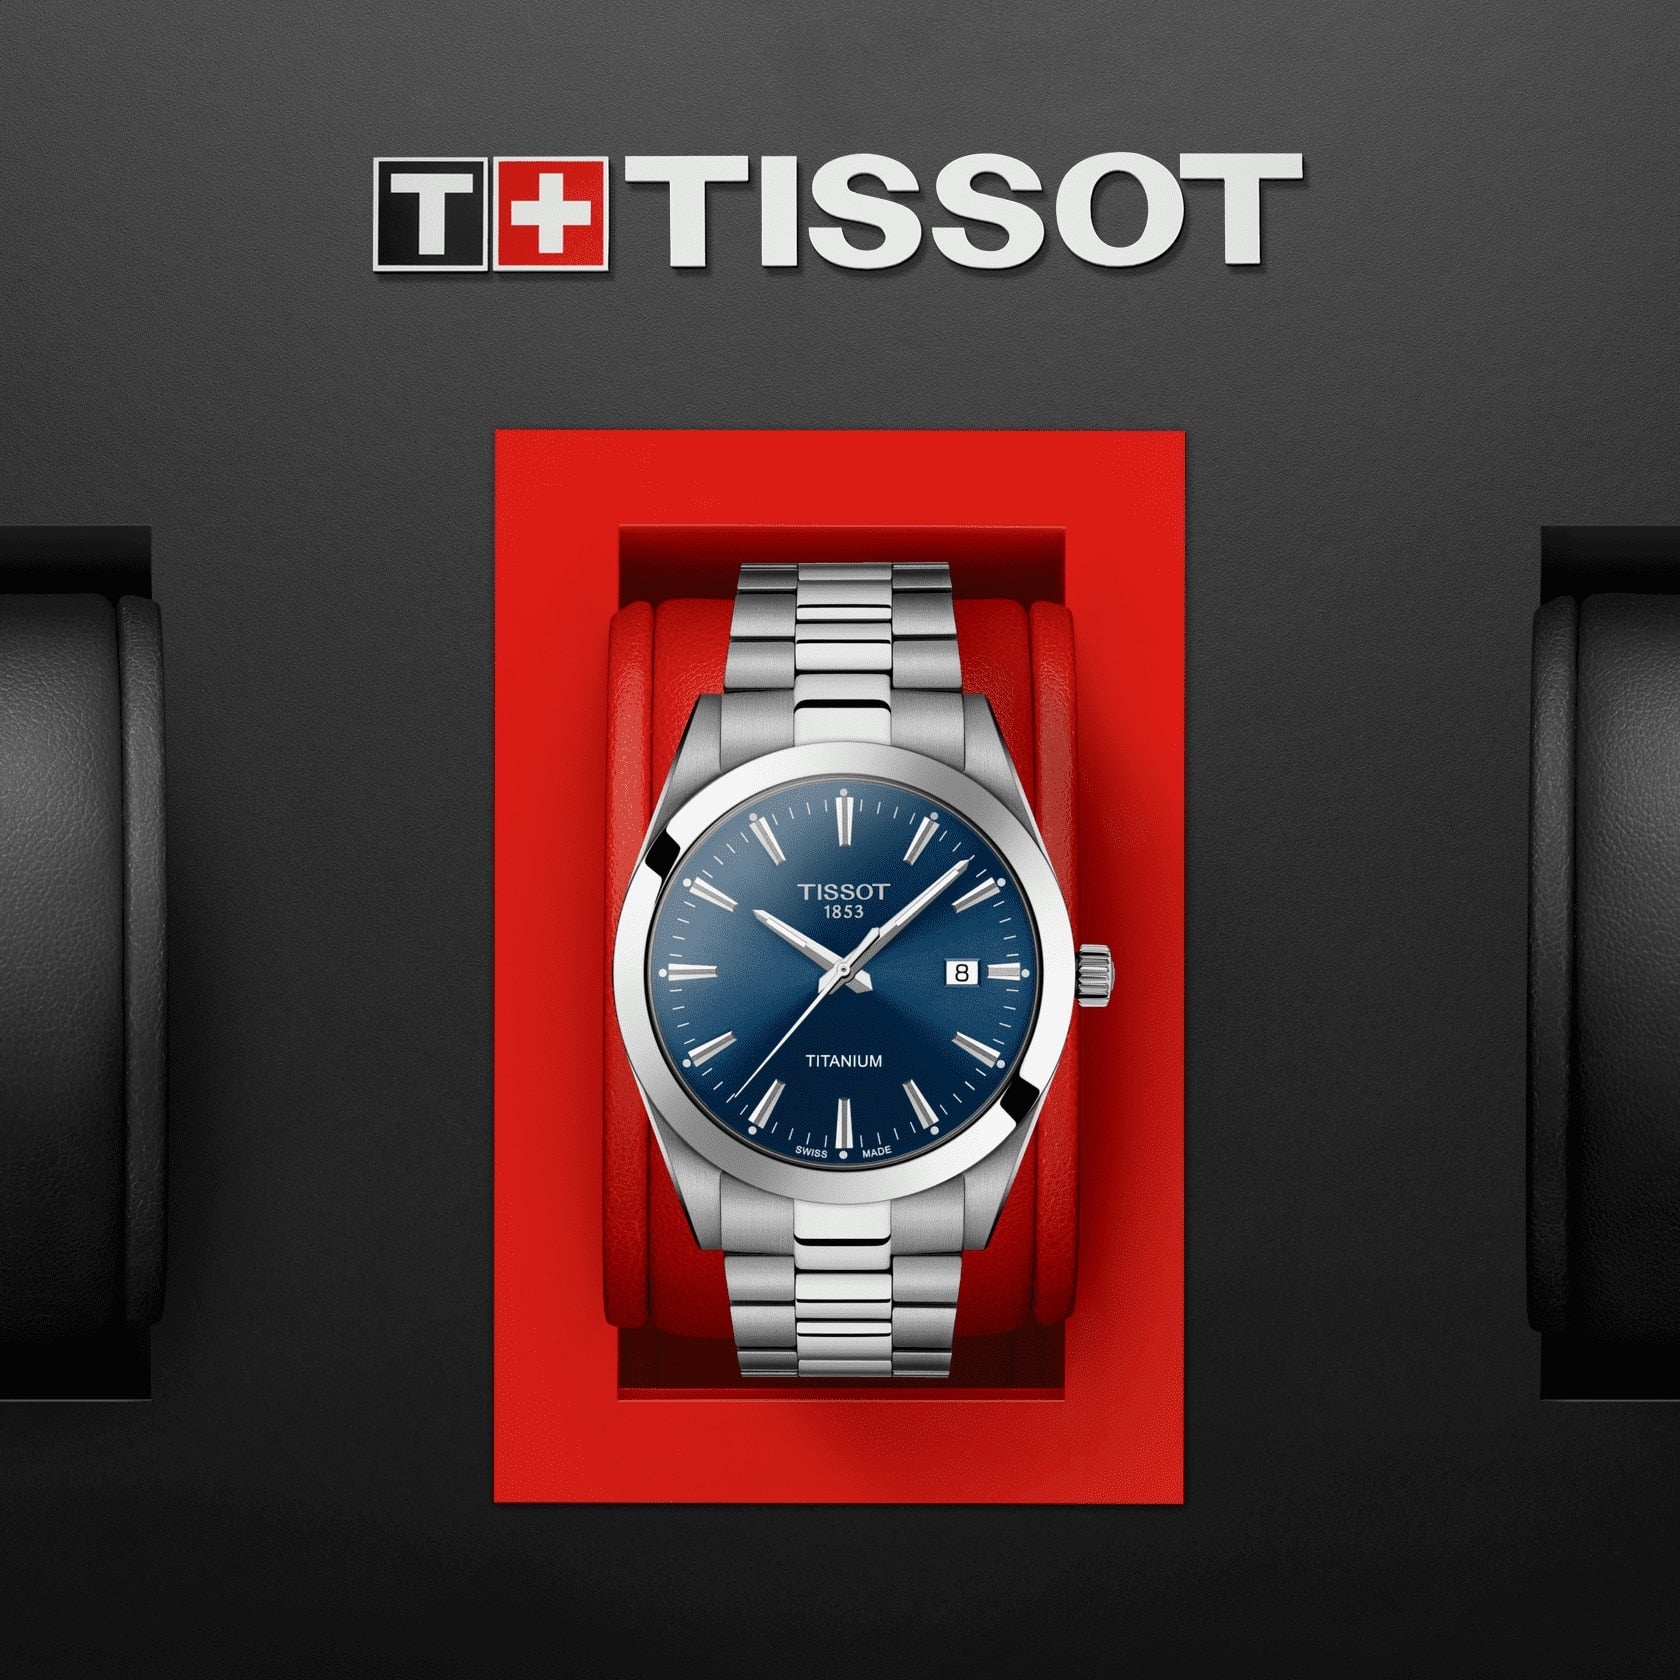 Men's Titanium Watch T1274104404100 Tissot